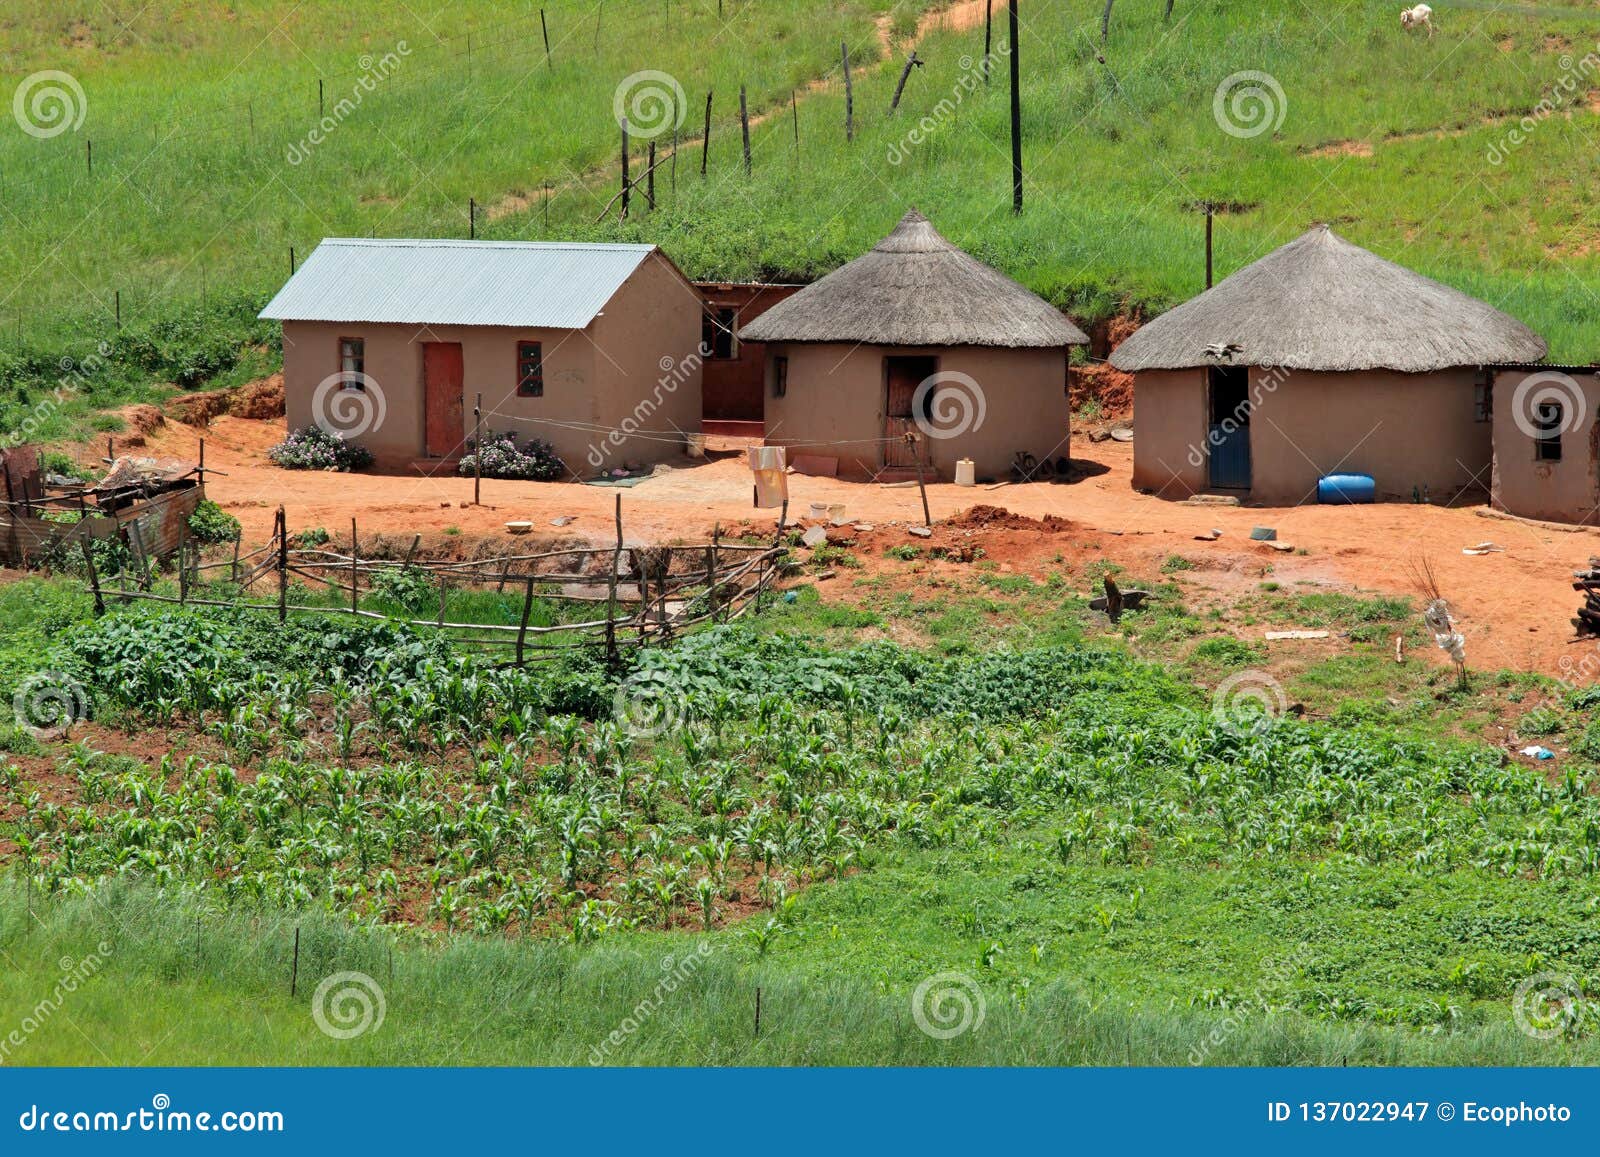 rural settlement - south africa